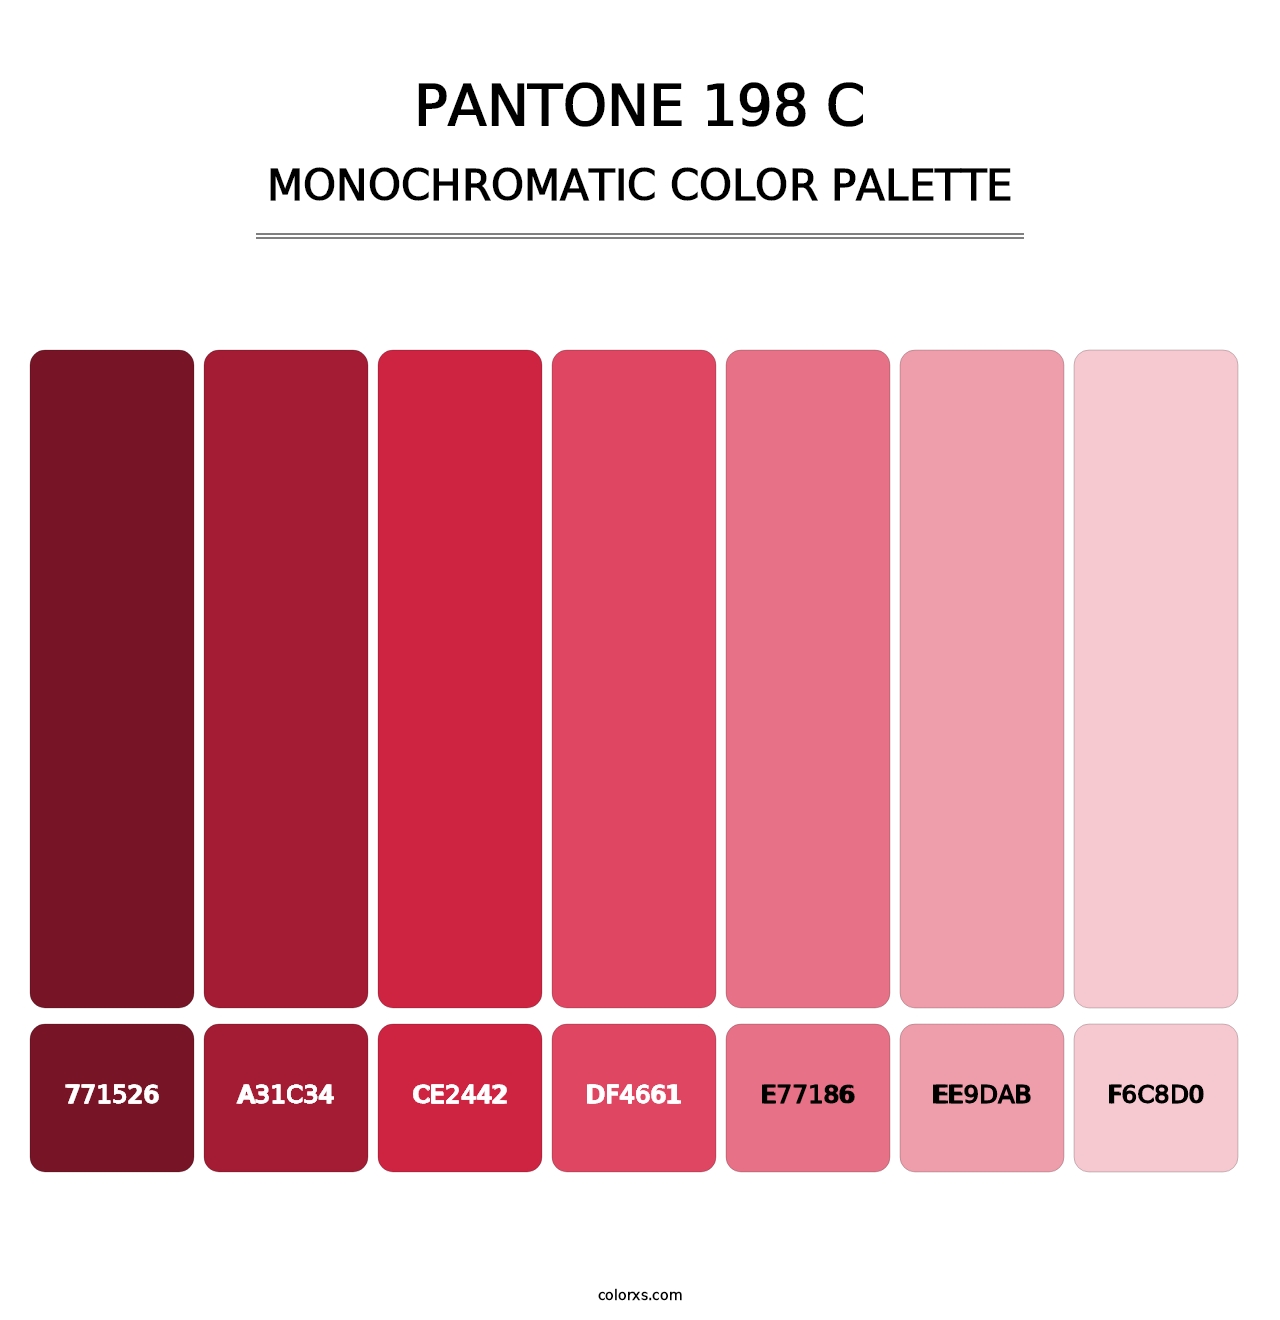 PANTONE 198 C - Monochromatic Color Palette